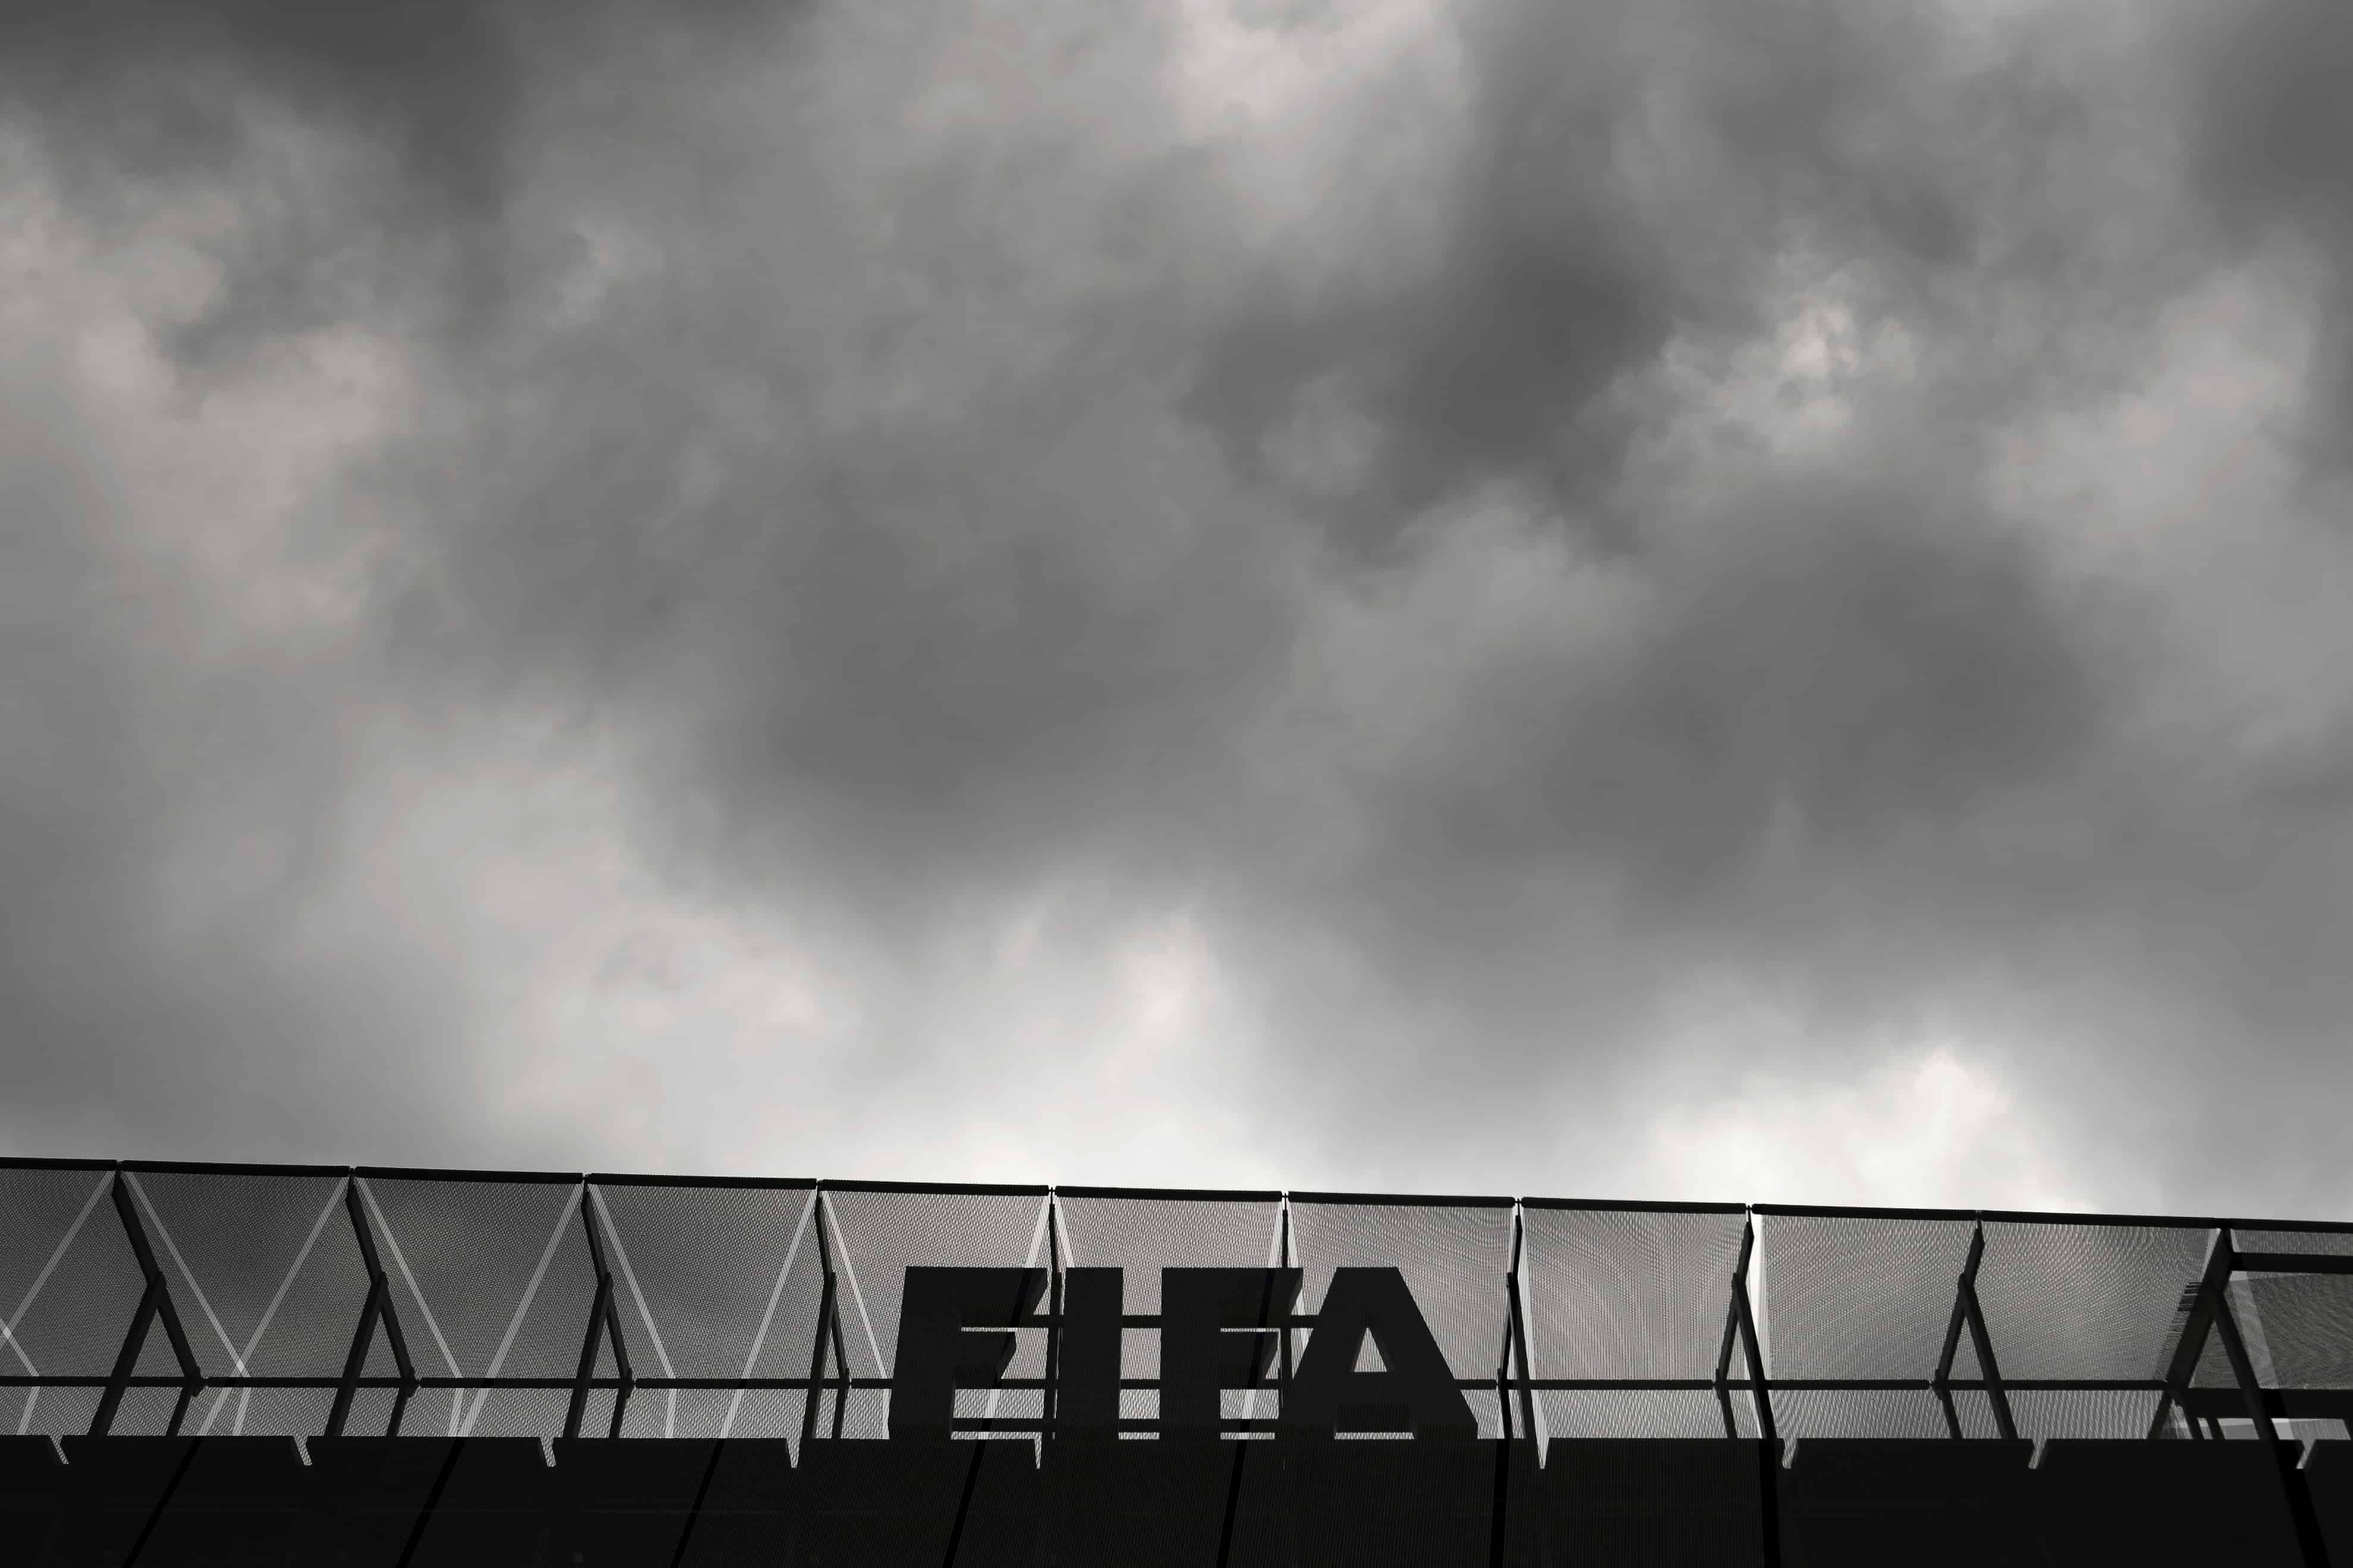 FIFA headquarters in Zurich.